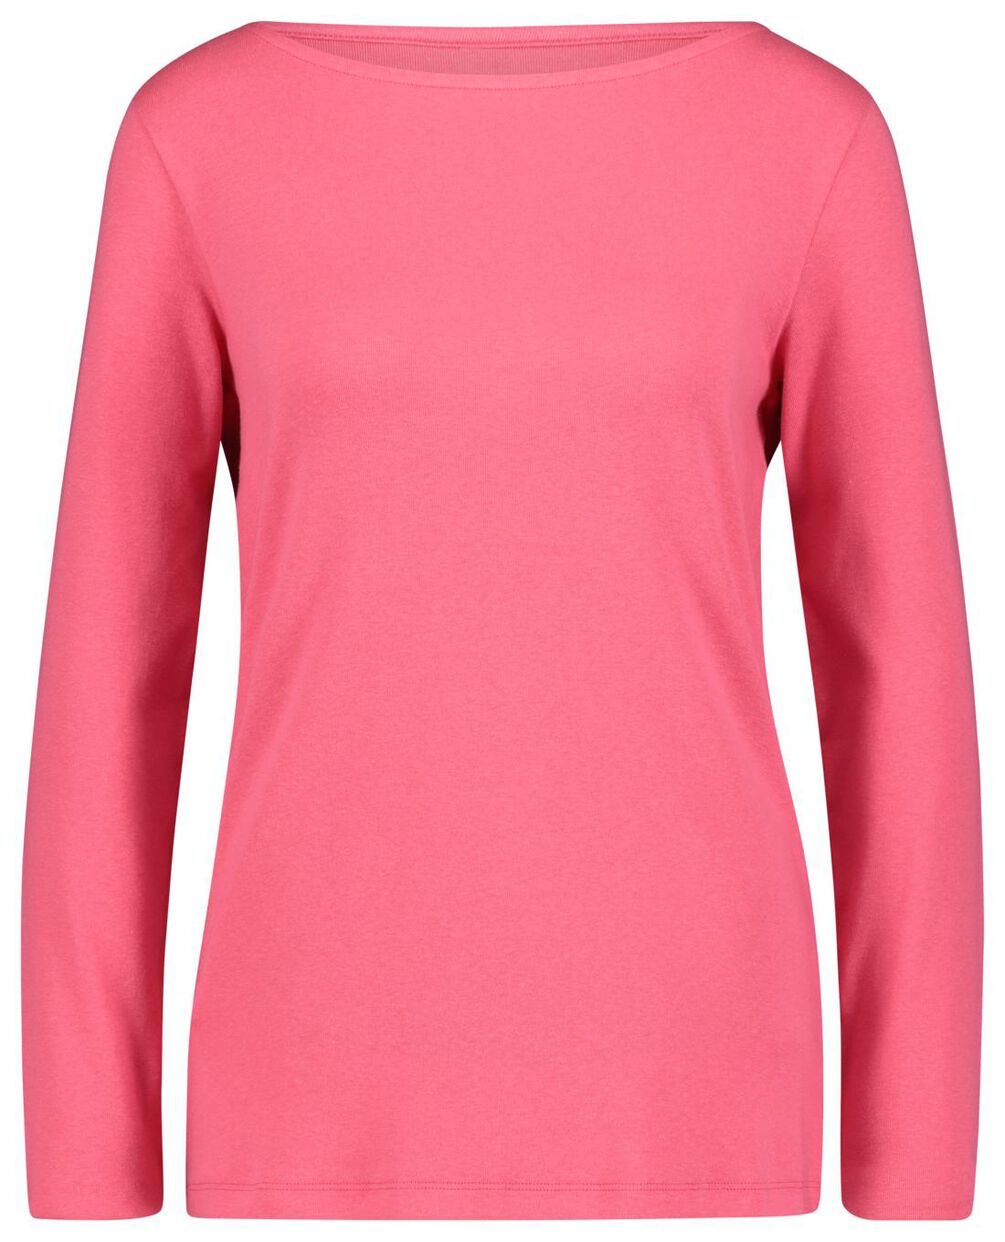 dames t-shirt boothals roze - HEMA